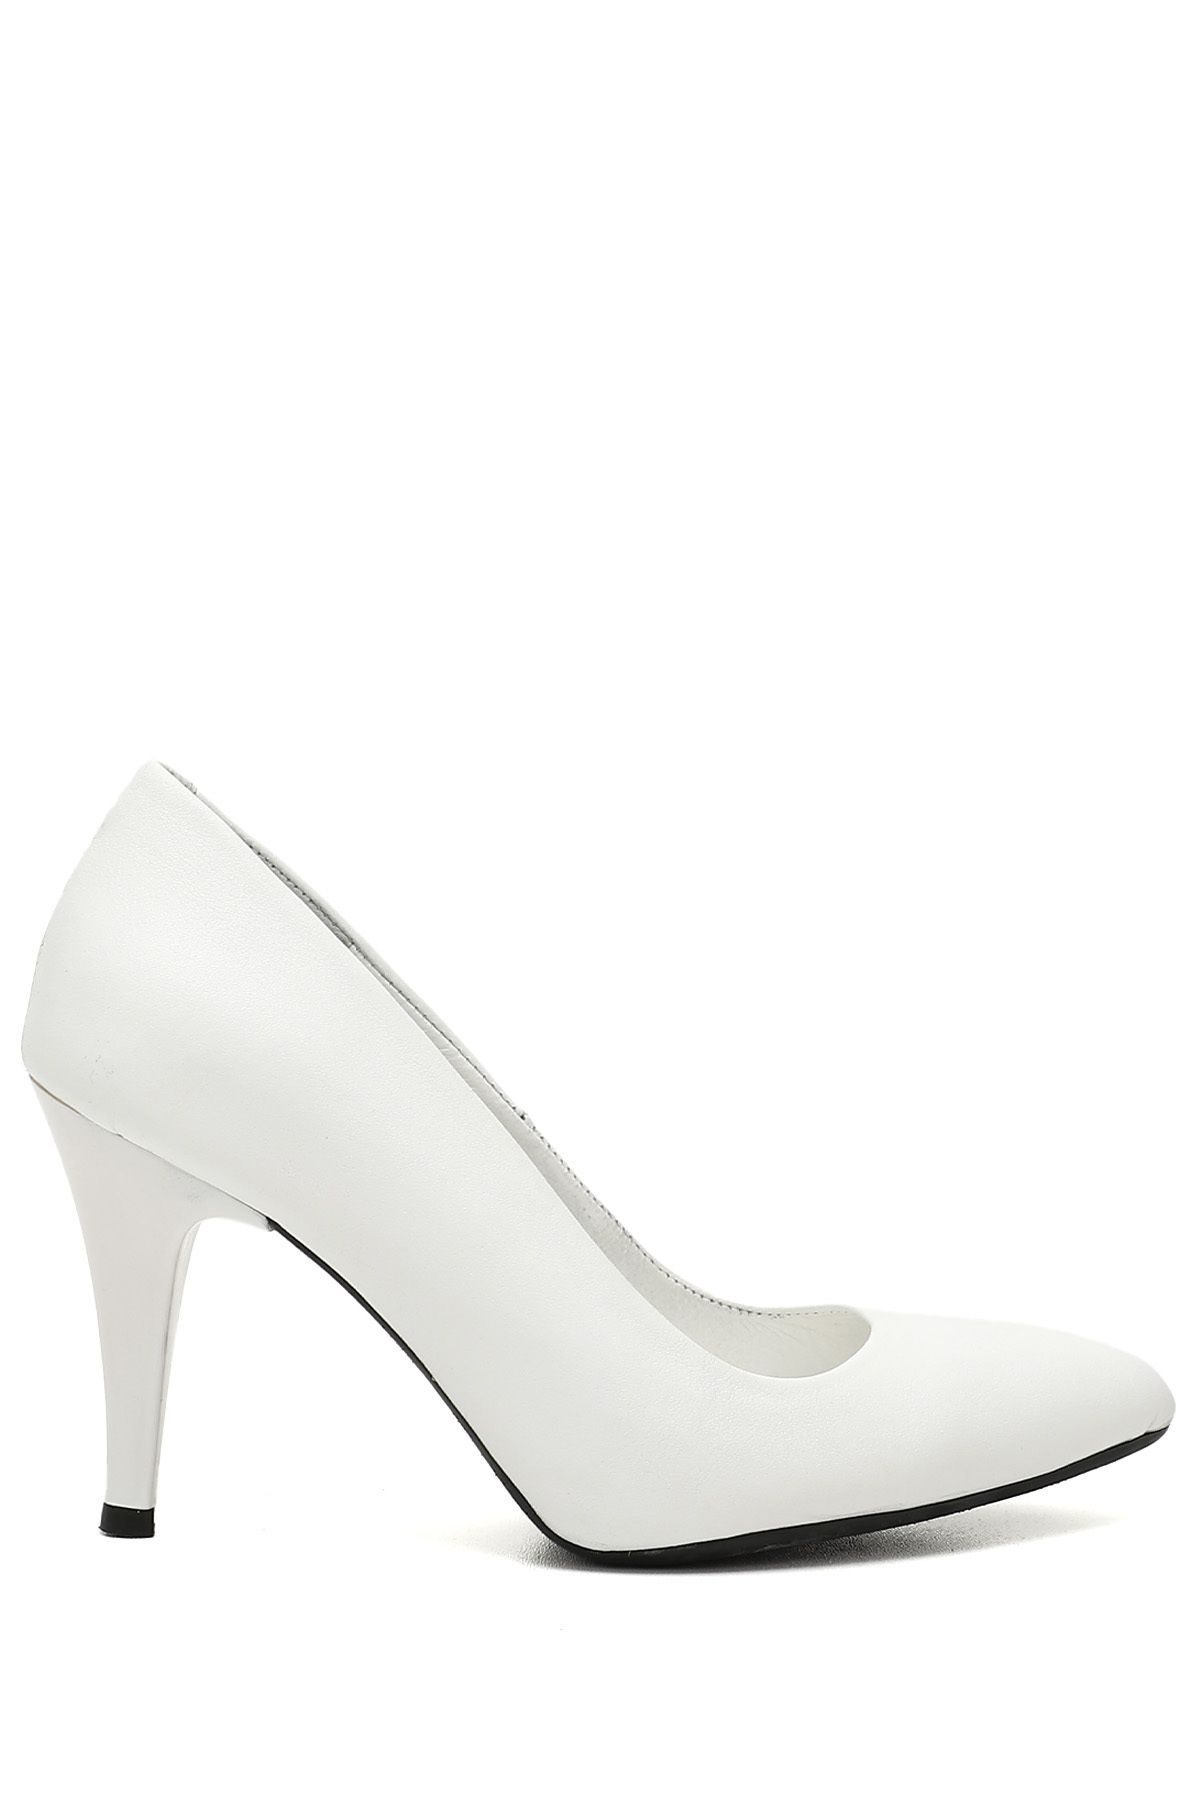 GÖNDERİ(R) Hakiki Deri Beyaz Sivri Burun Ince Yüksek Topuklu Stiletto Kadın Ayakkabı 15254